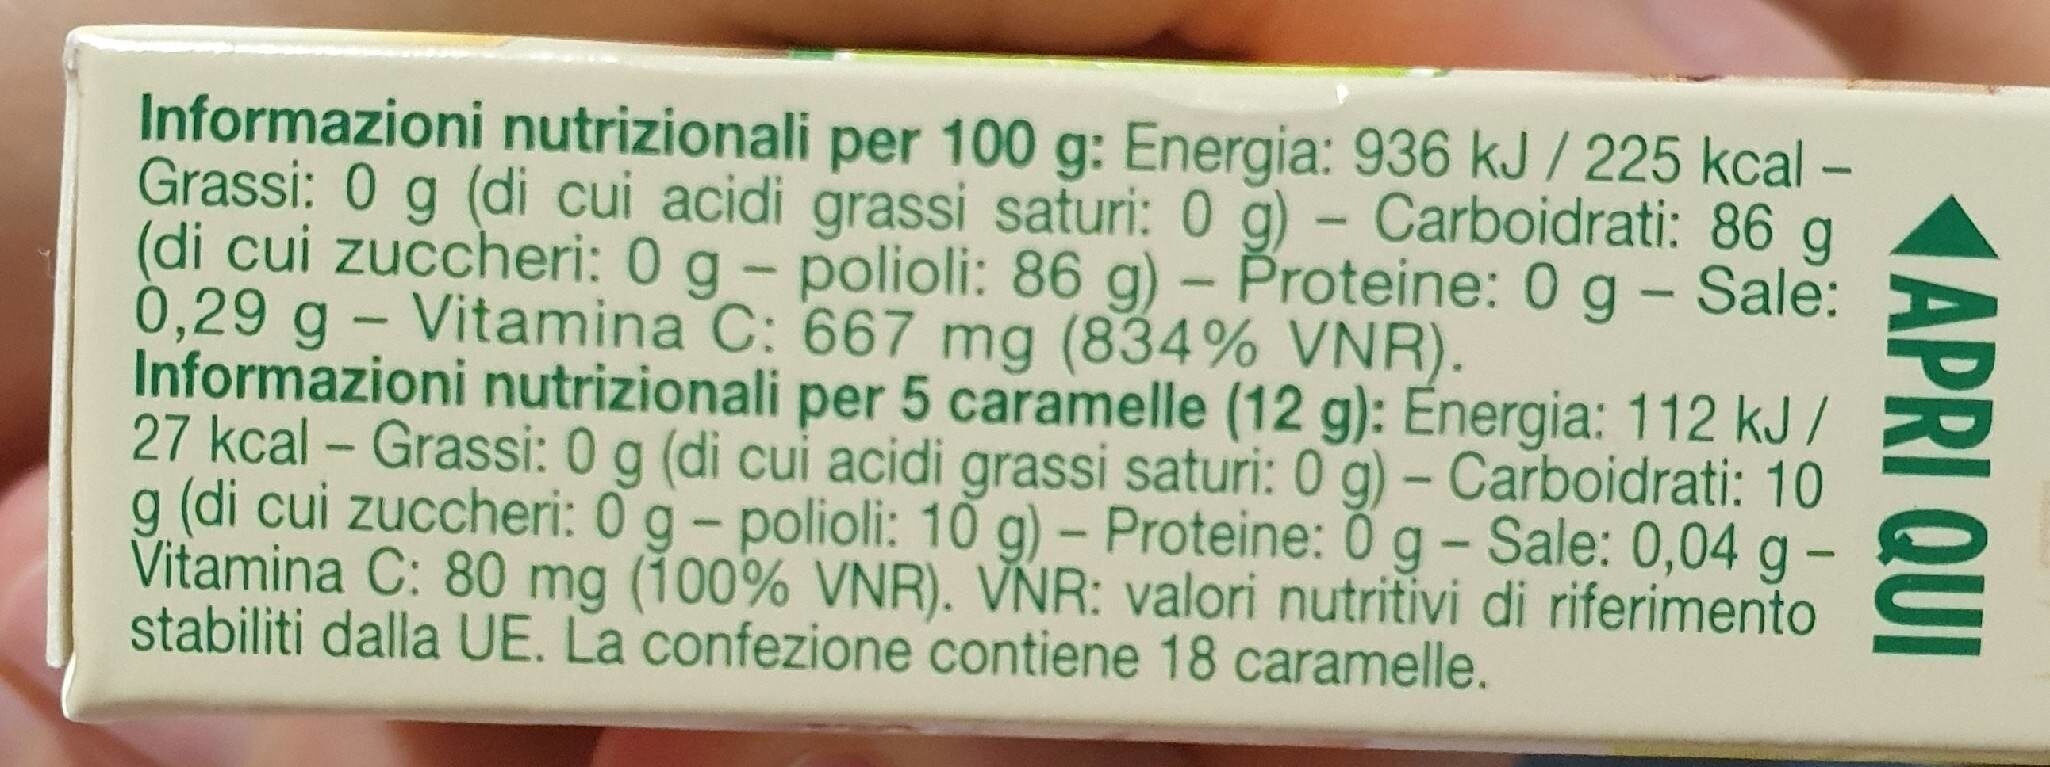 caramelle - Nährwertangaben - it